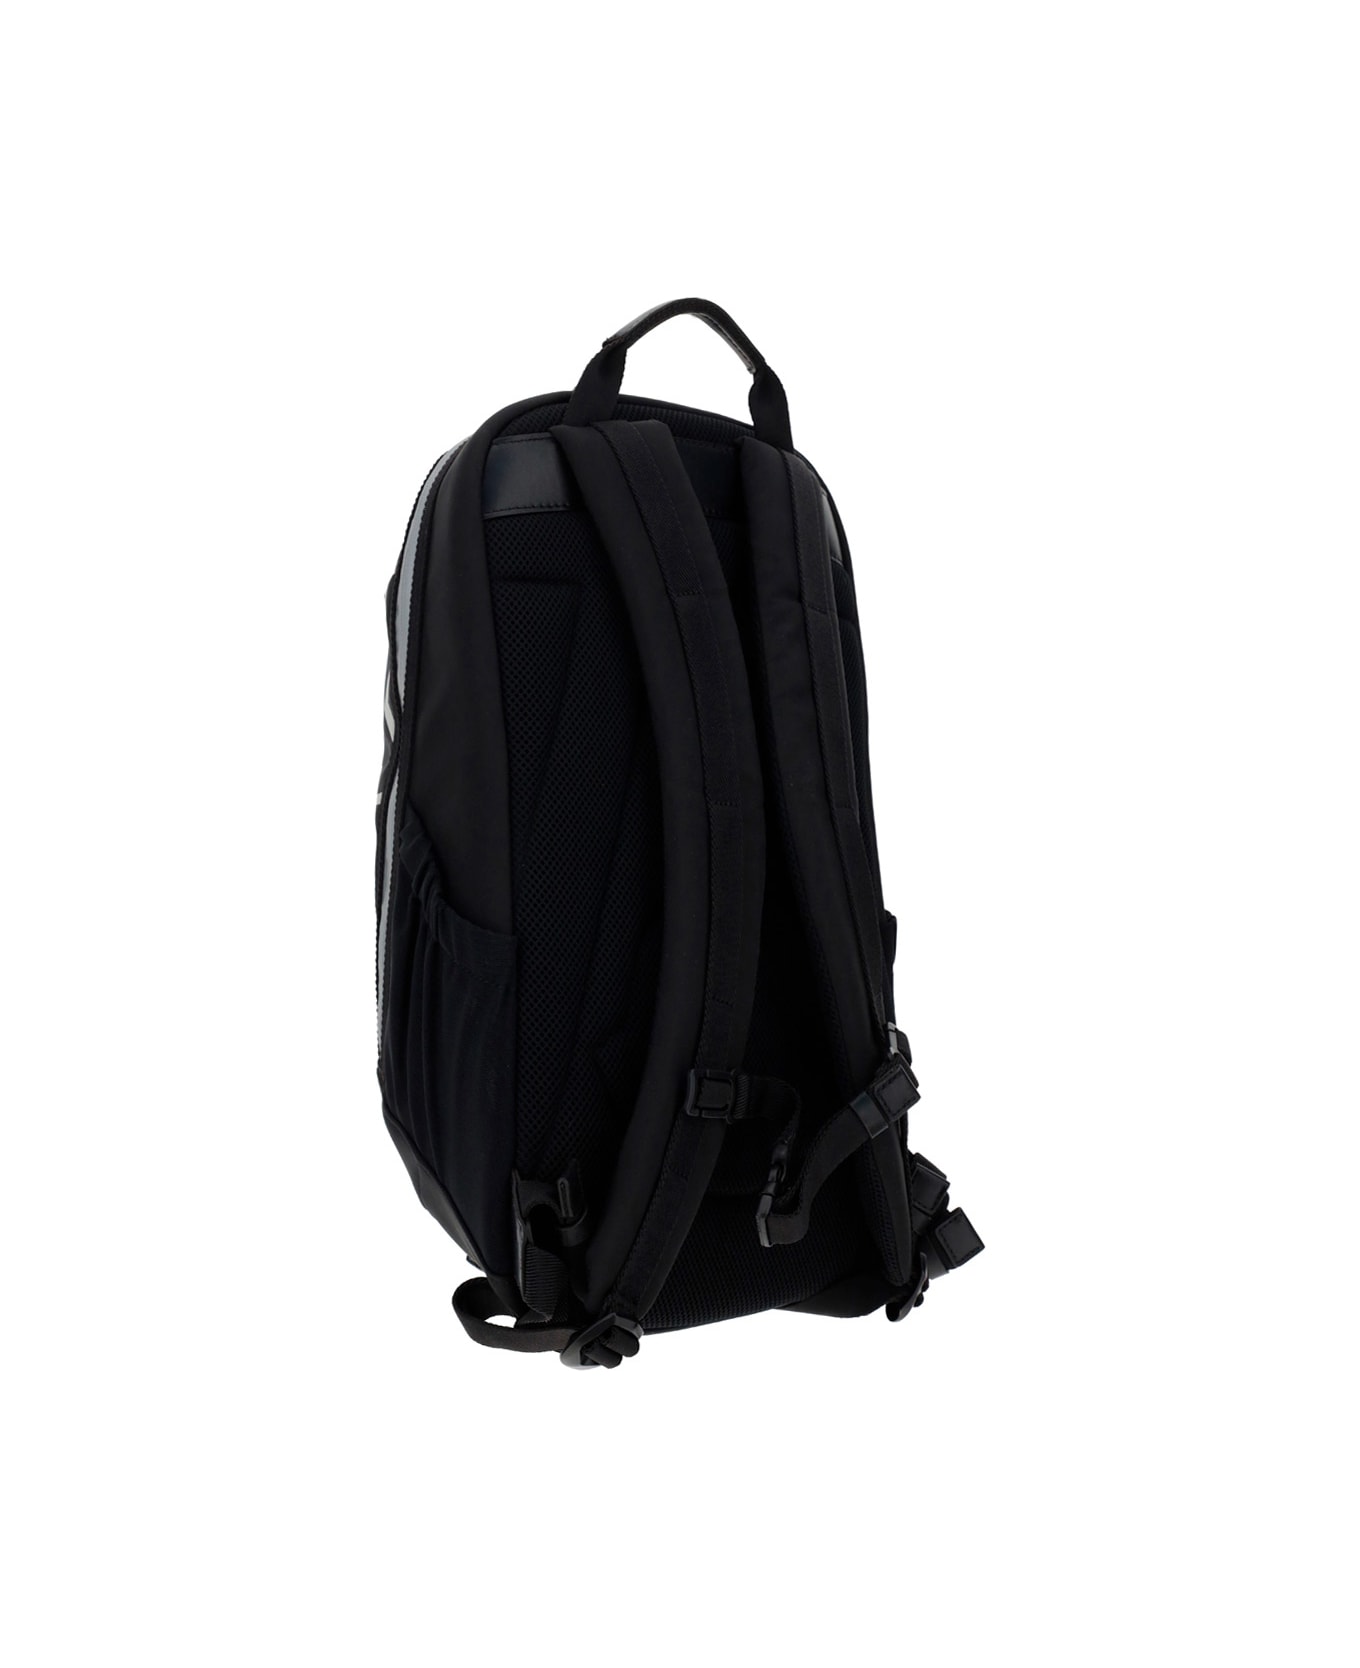 Moncler Cut Backpack - Black